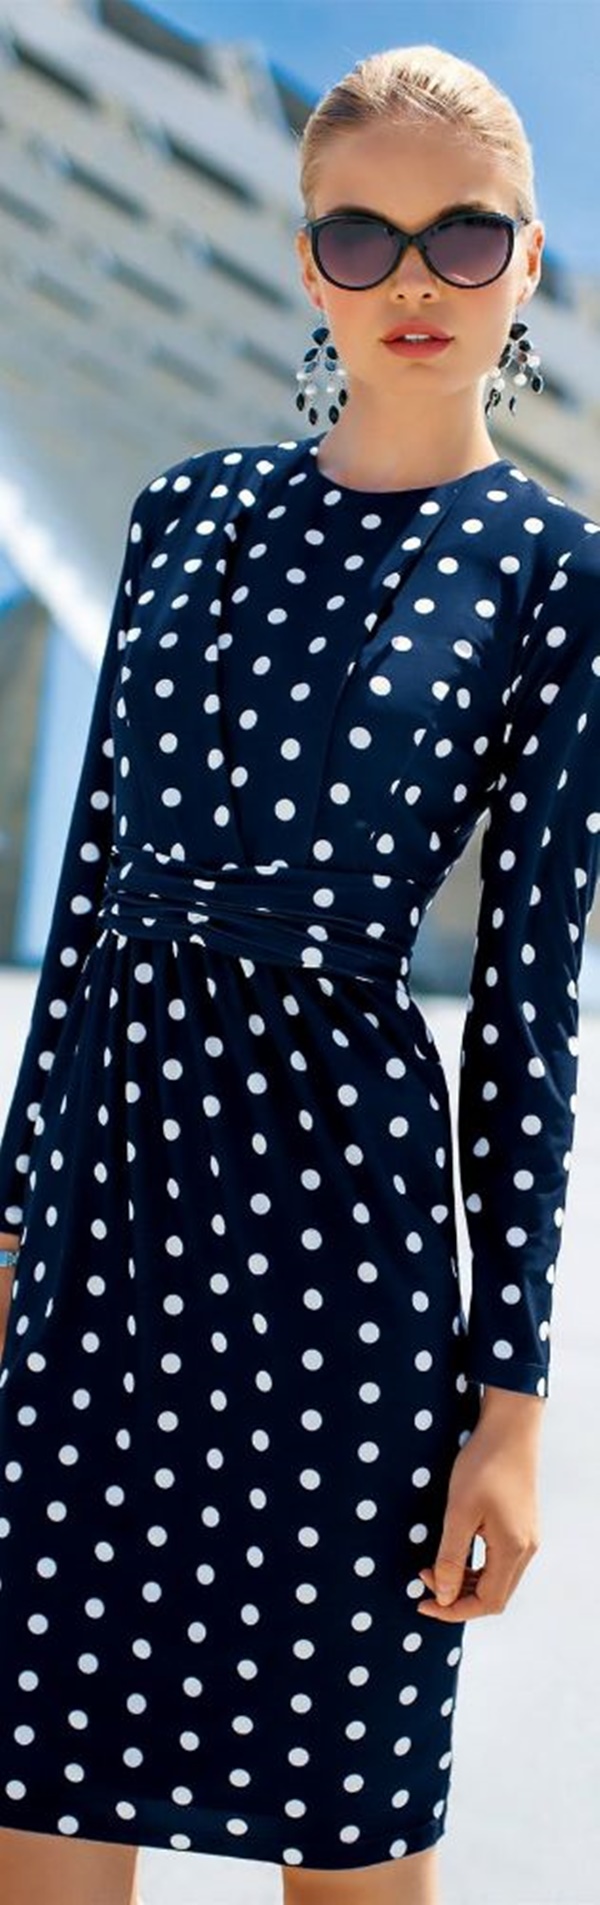 polka dots outfits (55)